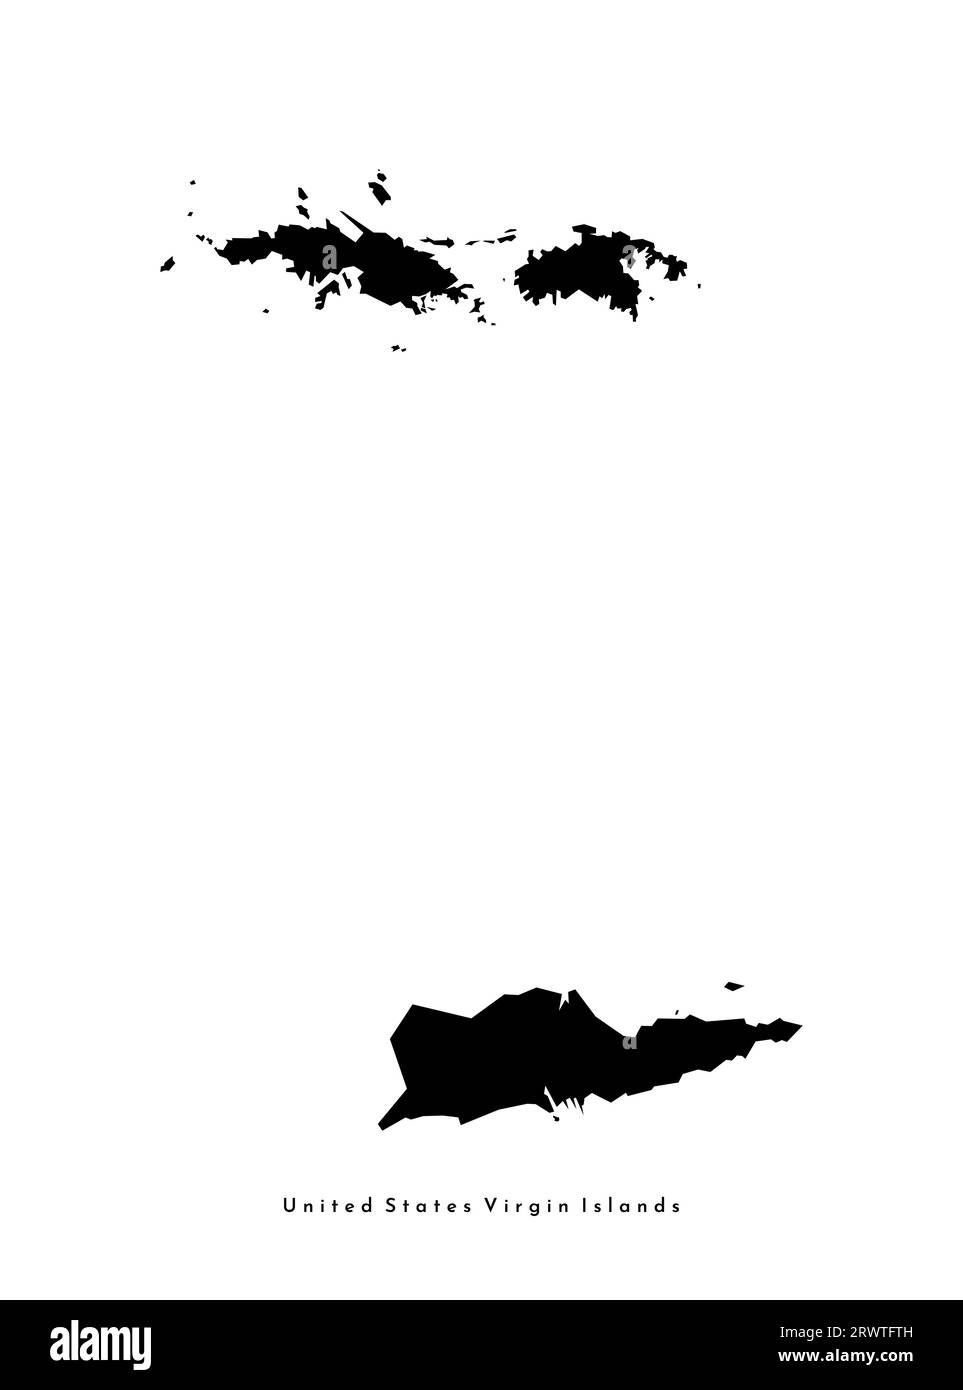 Vektor isolierte vereinfachte Illustration Symbol mit schwarzer Silhouette der United States Virgin Islands (american) Karte. Weißer Hintergrund Stock Vektor